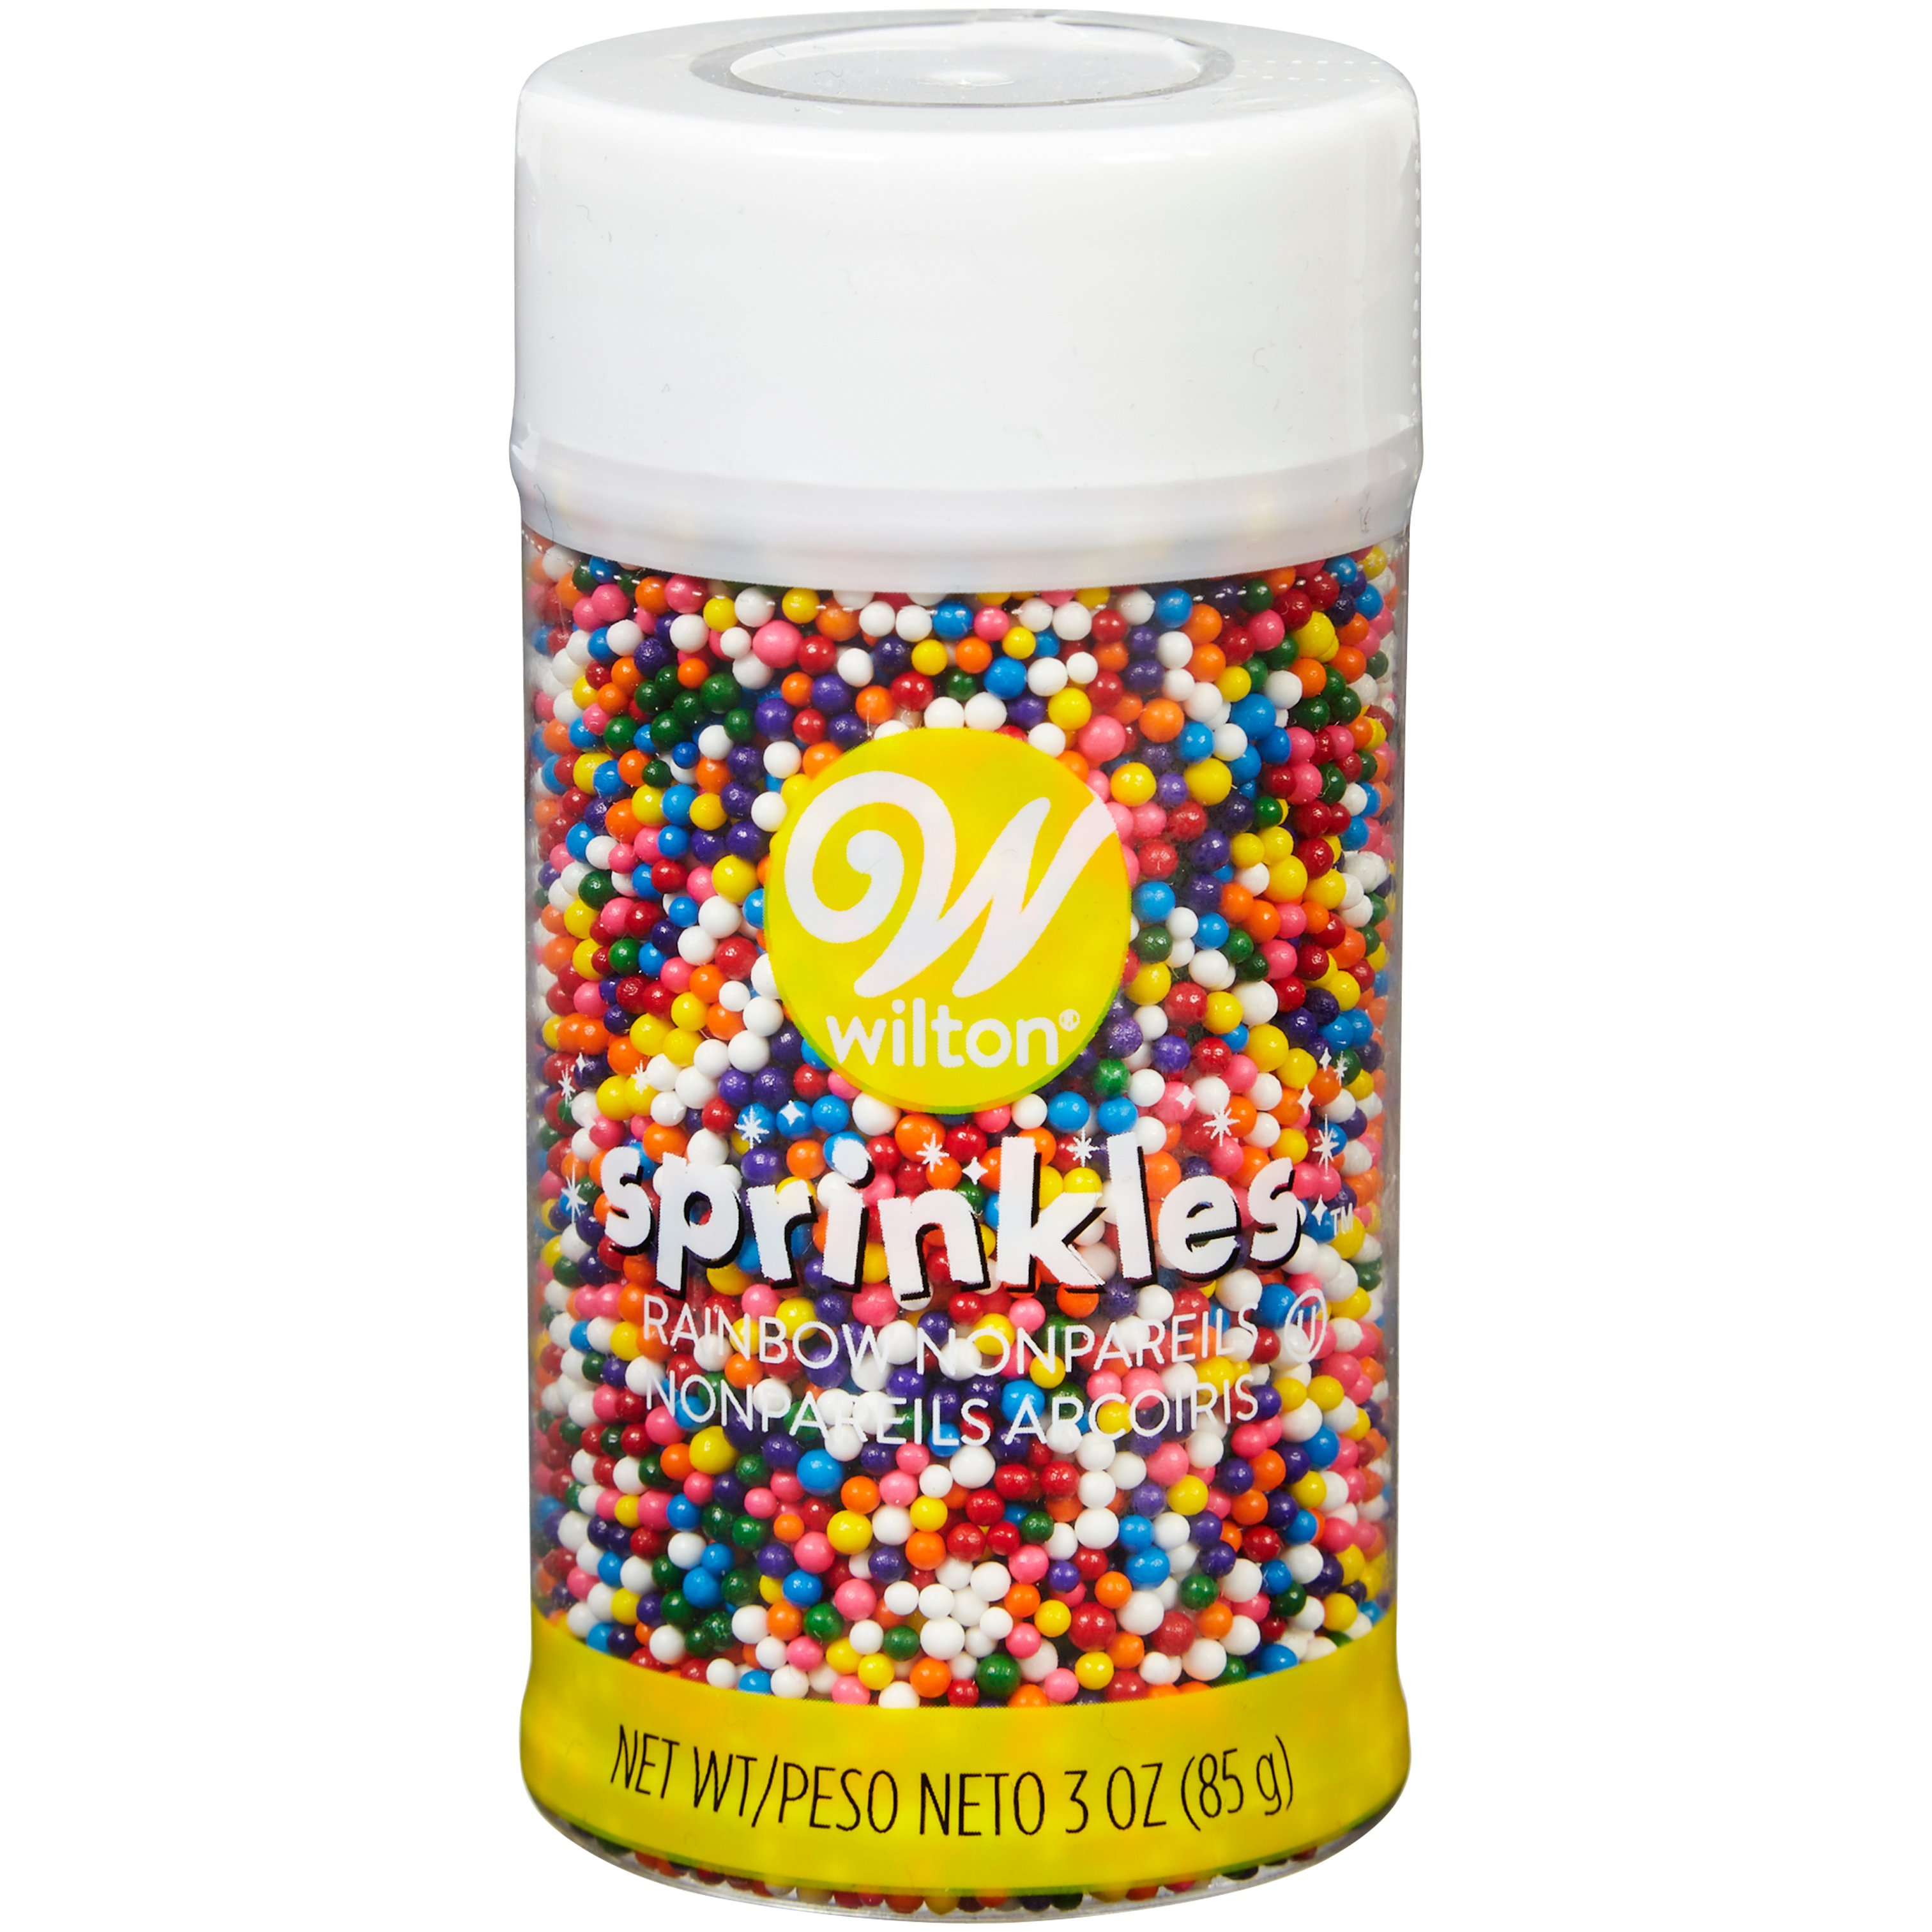 rainbow sprinkles